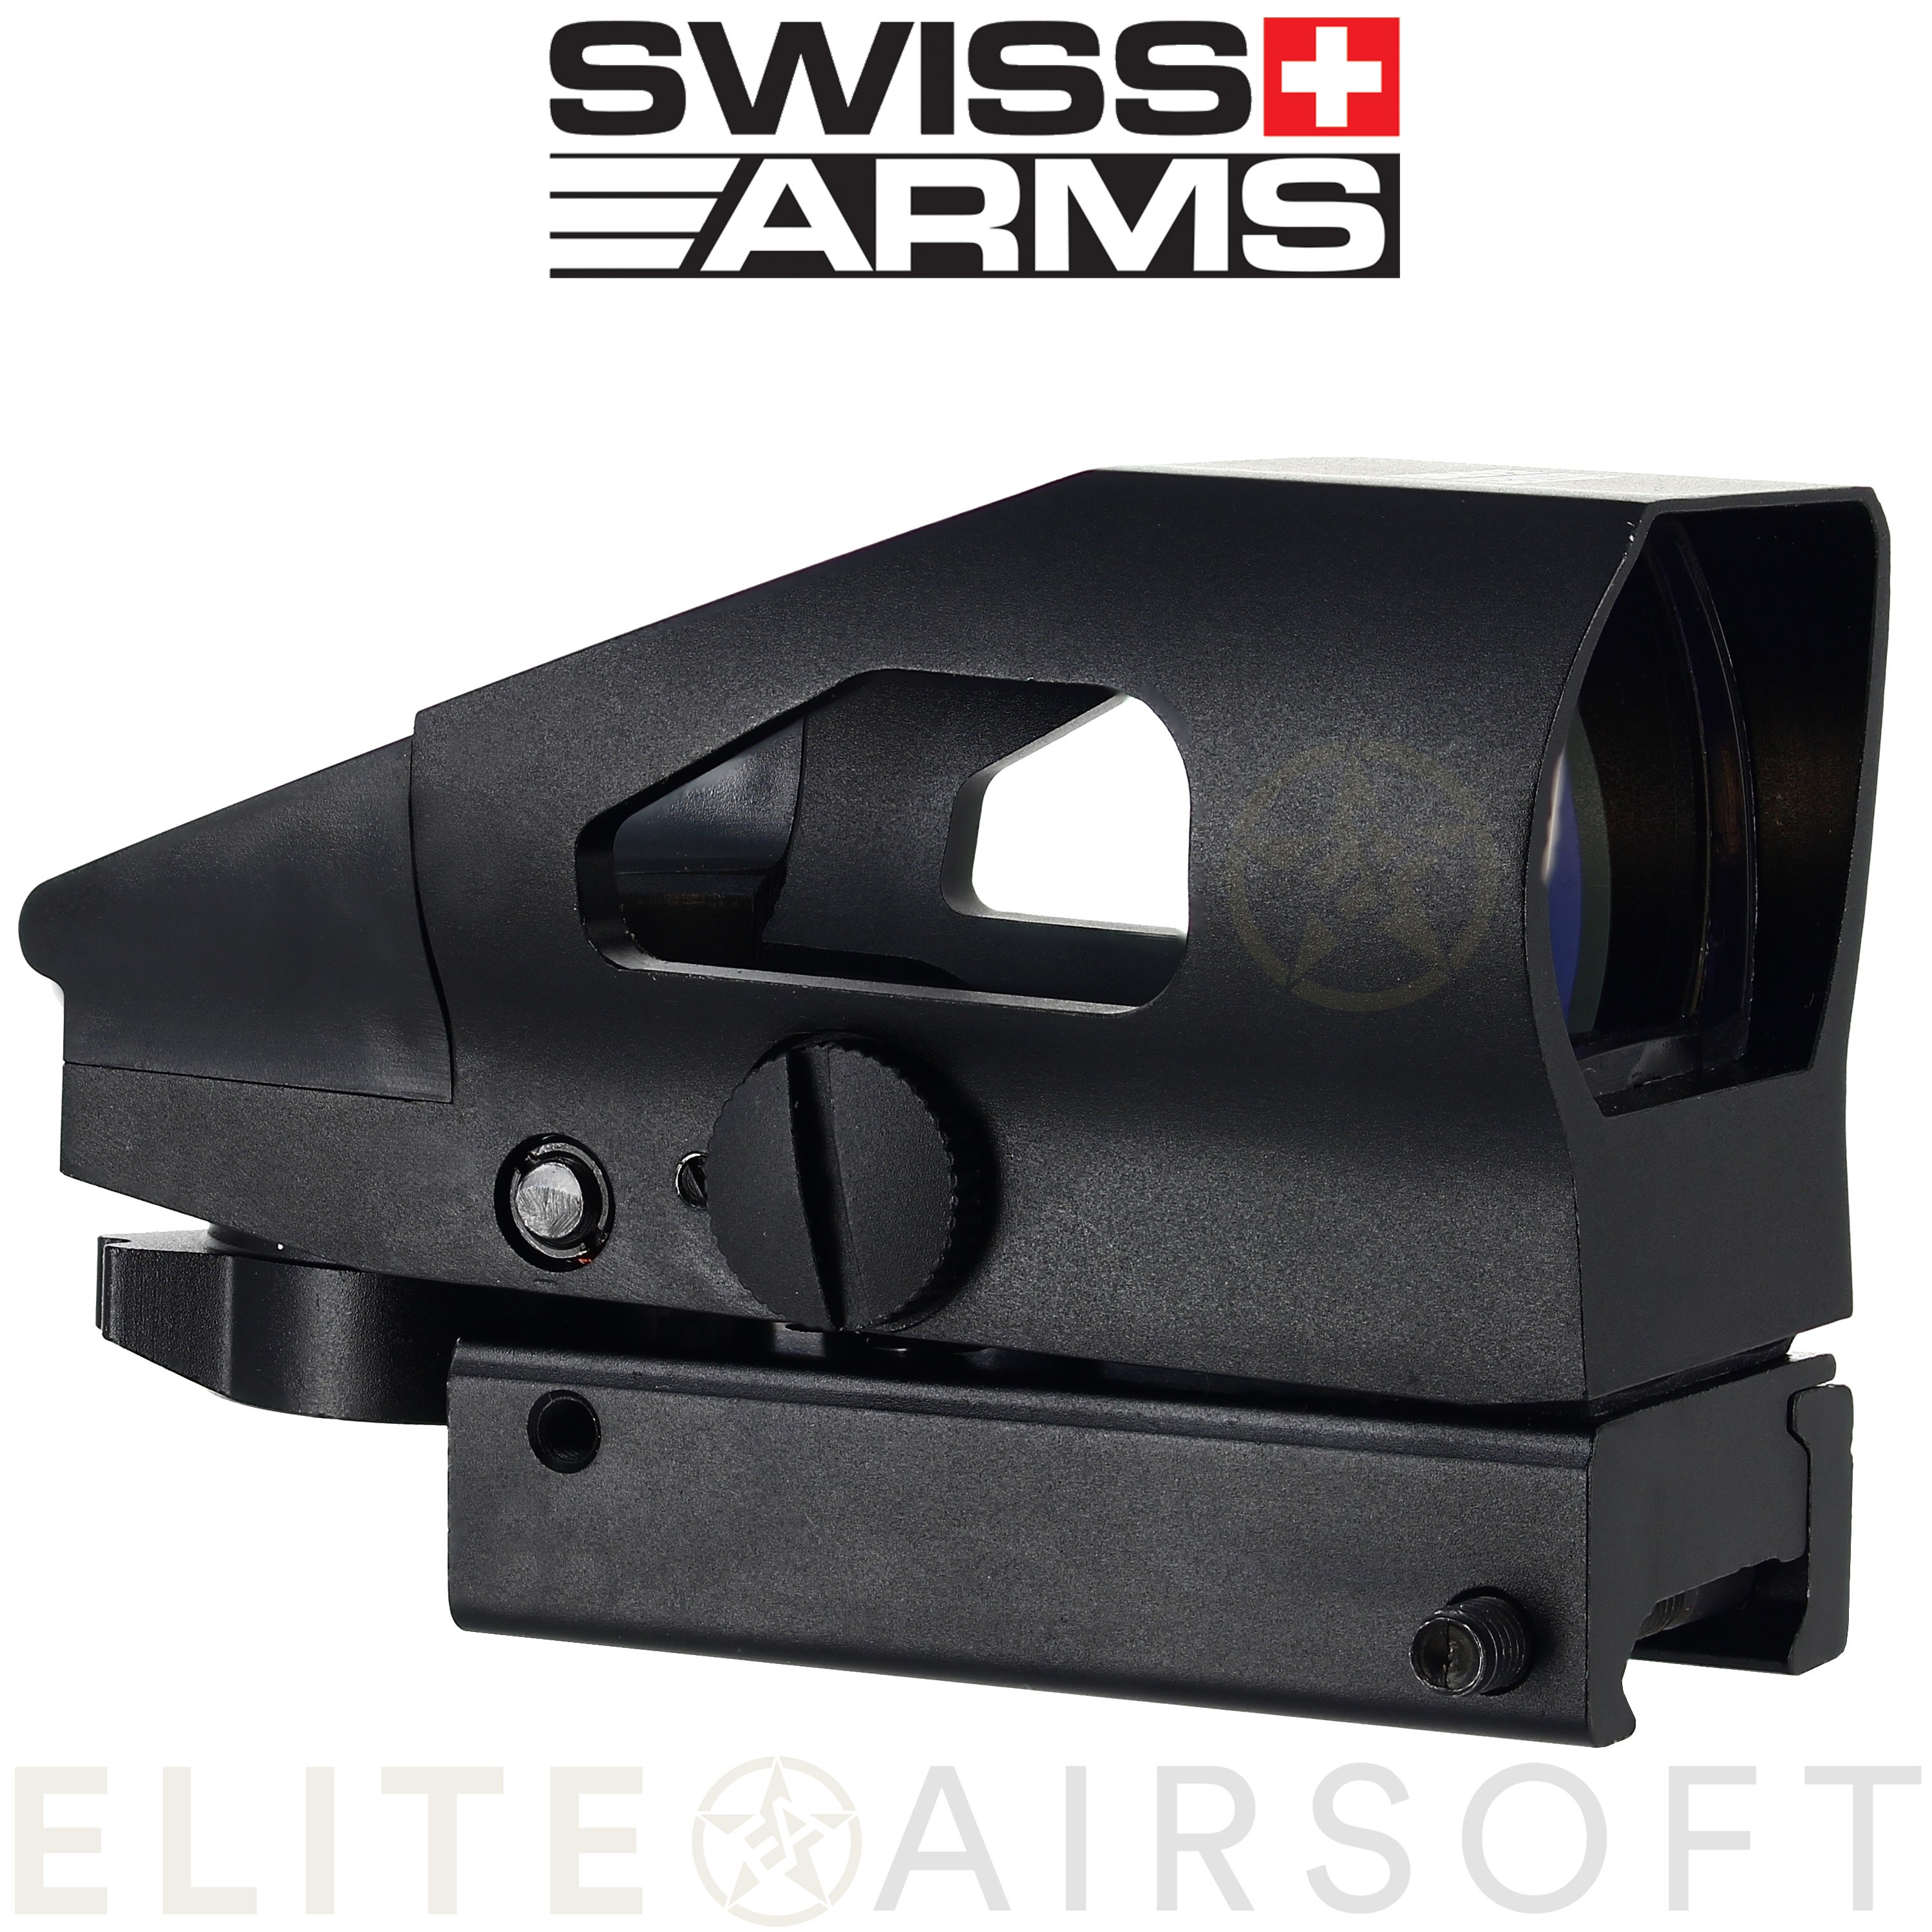 Swiss arms - Viseur point rouge type M3 - Noir - Elite Airsoft